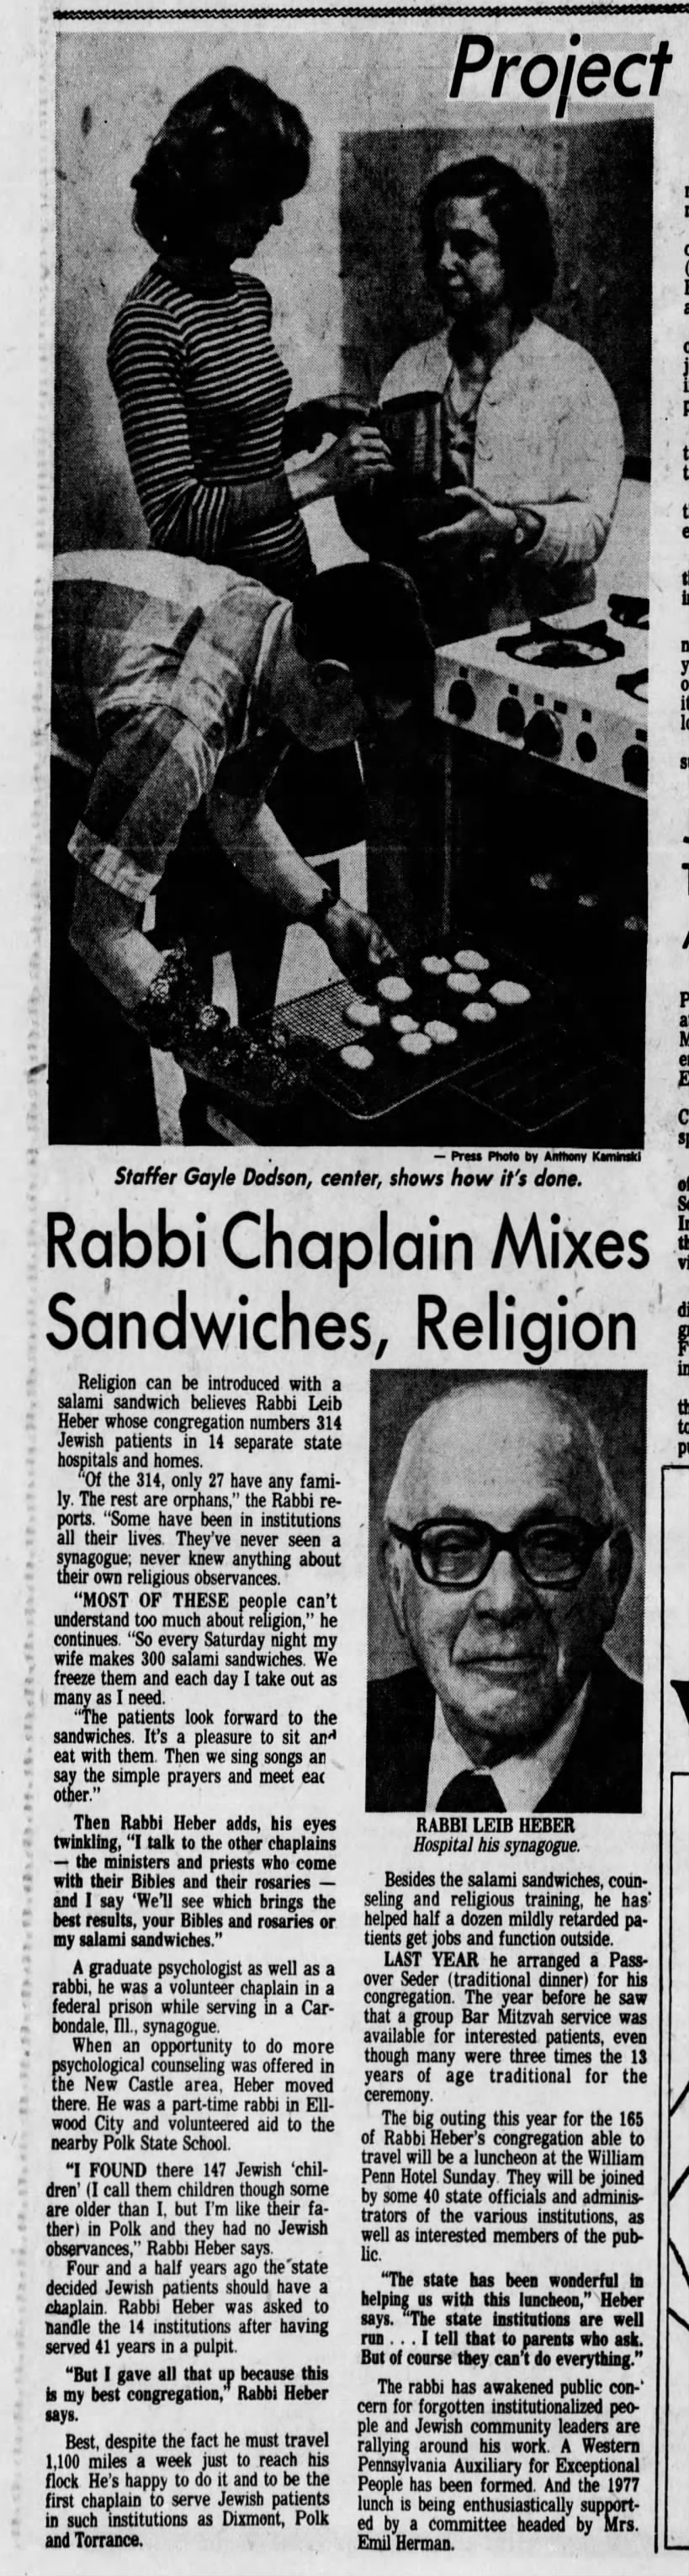 "Rabbi Chaplain Mixes Sandwiches, Religion"